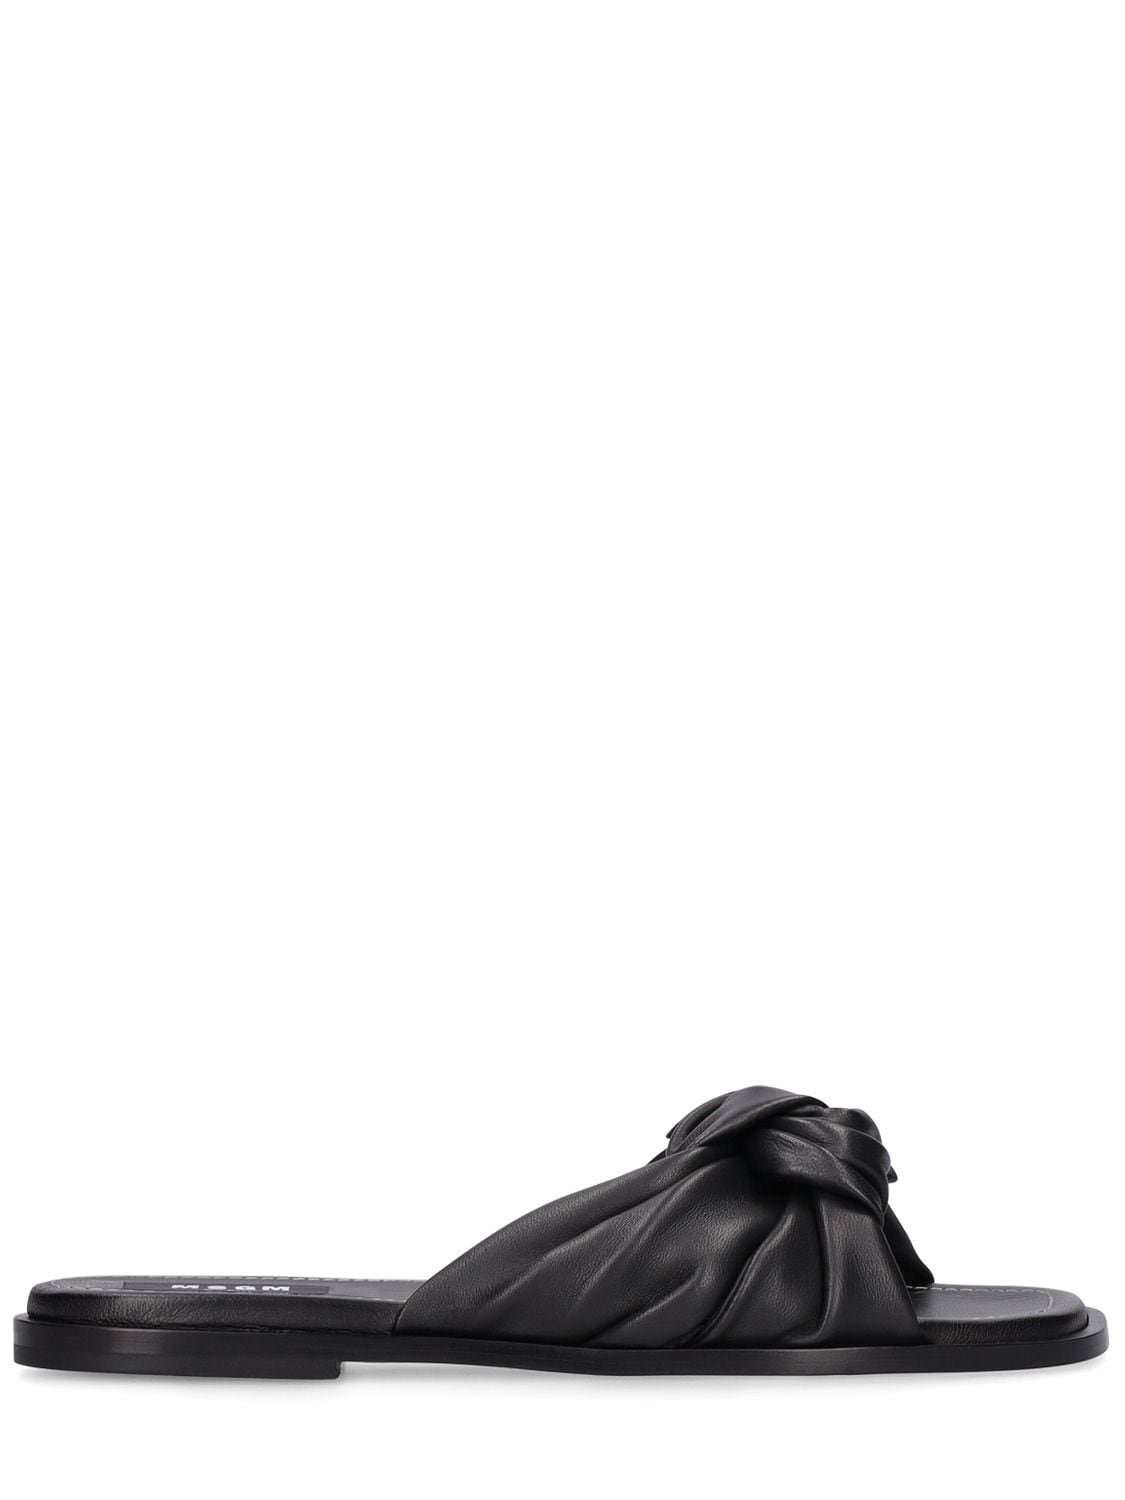 Msgm 5mm Leather Slide Sandals In Black